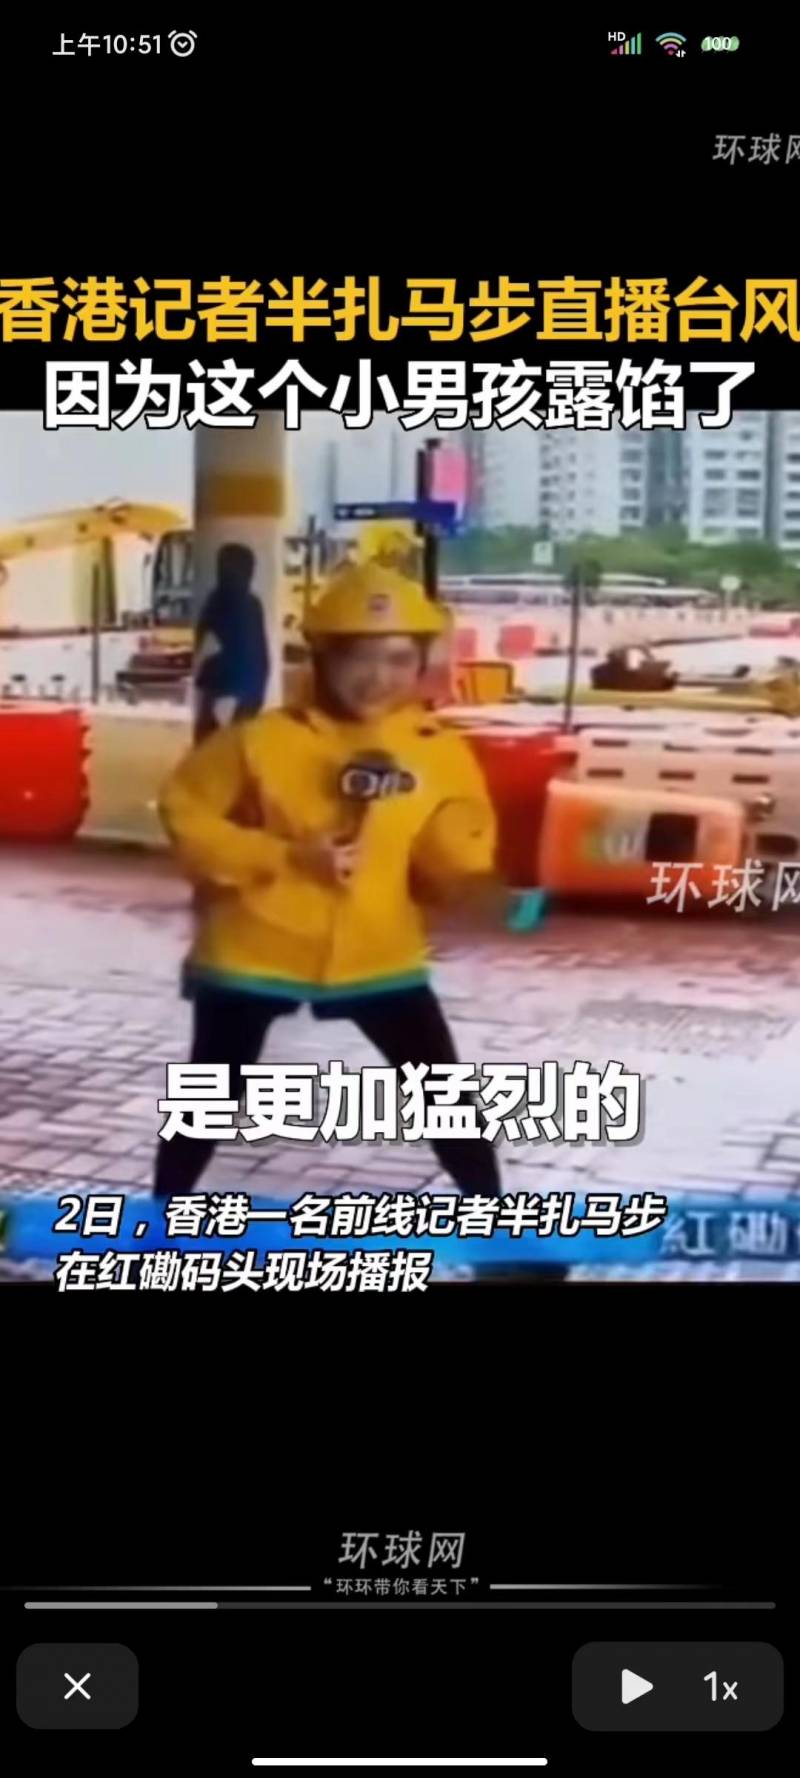 香港記者半紥馬步直播台風，男孩淡定背後意外成焦點